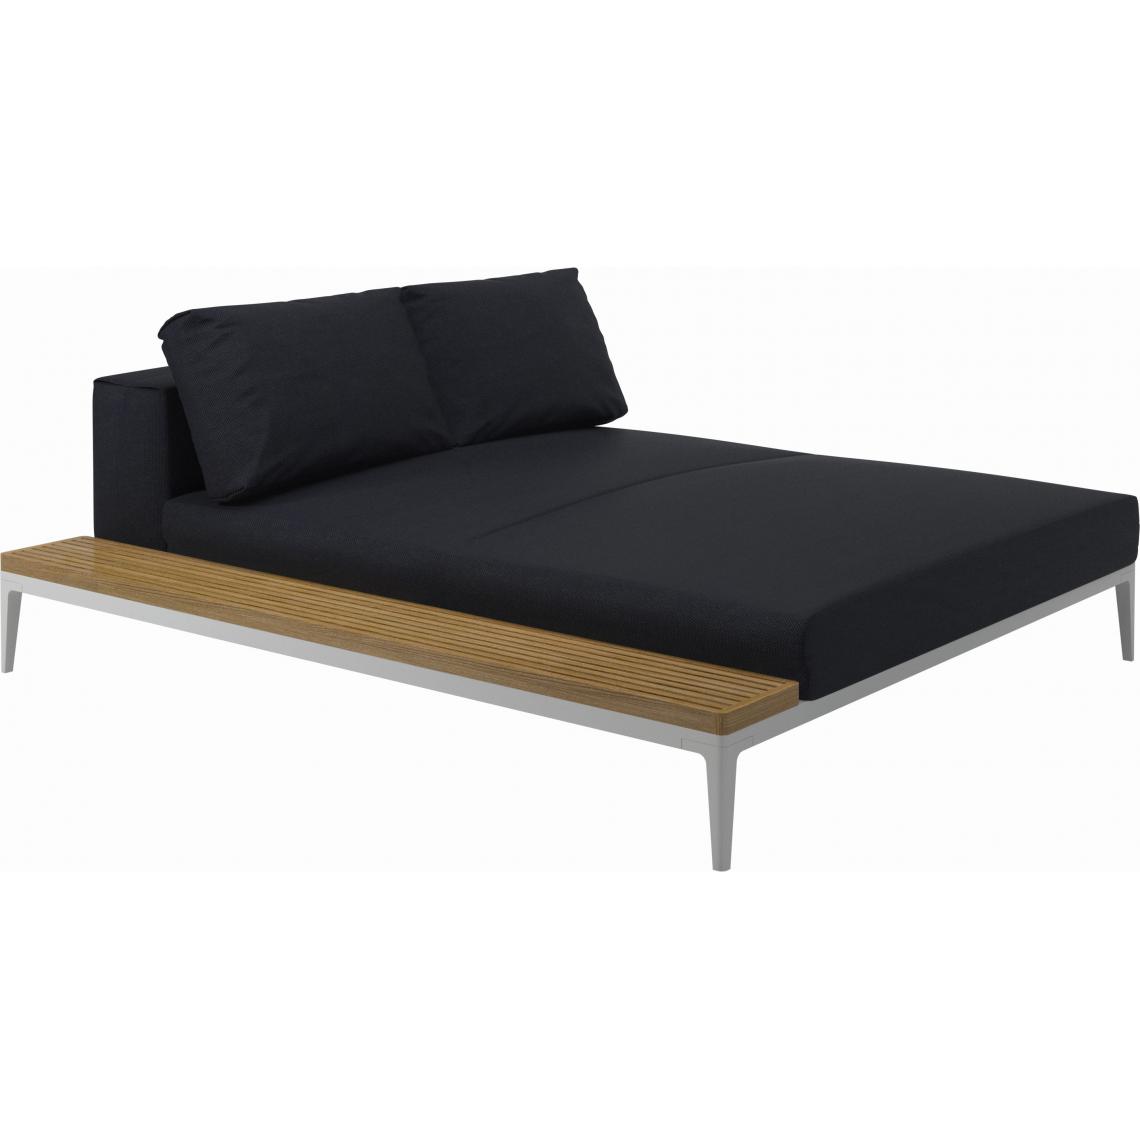 Gloster - Canapé Grid Module de relaxation avec table - GlosterGridTeak - blanc - Fife Shadow - Ensembles canapés et fauteuils